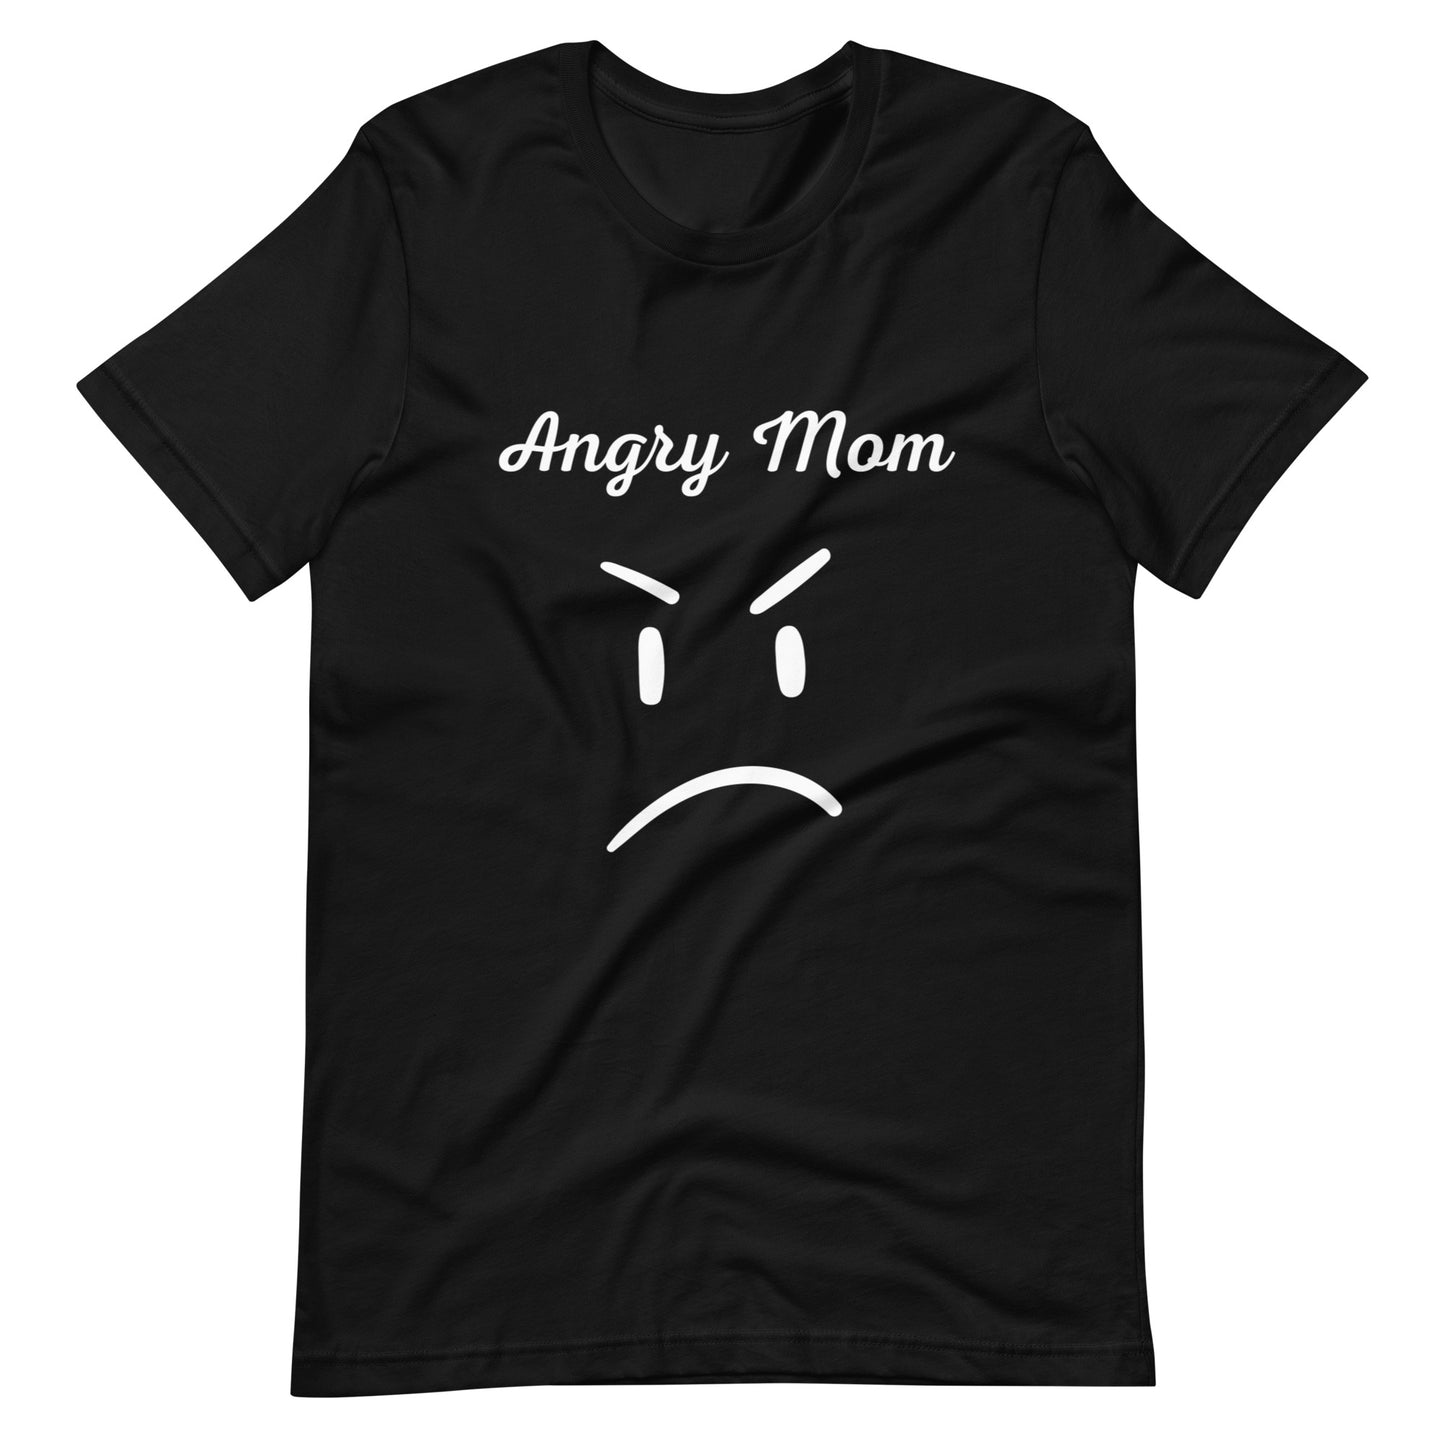 Angry mom t-shirt